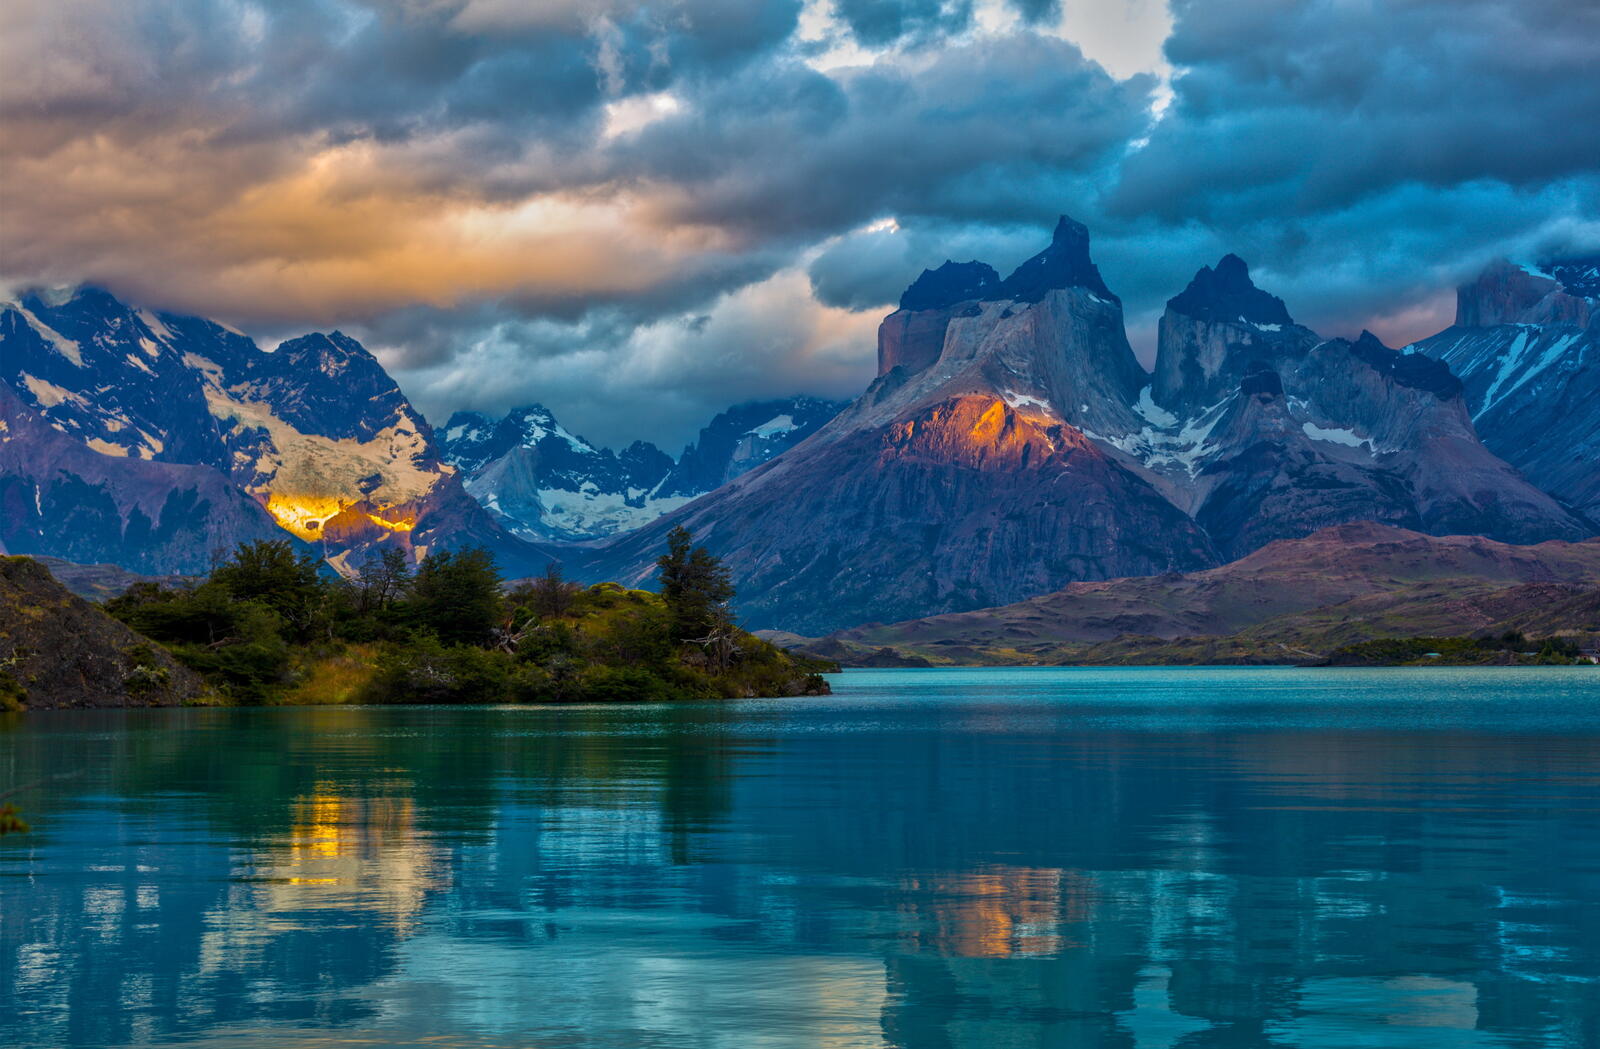 Wallpapers Argentina lake landscape on the desktop